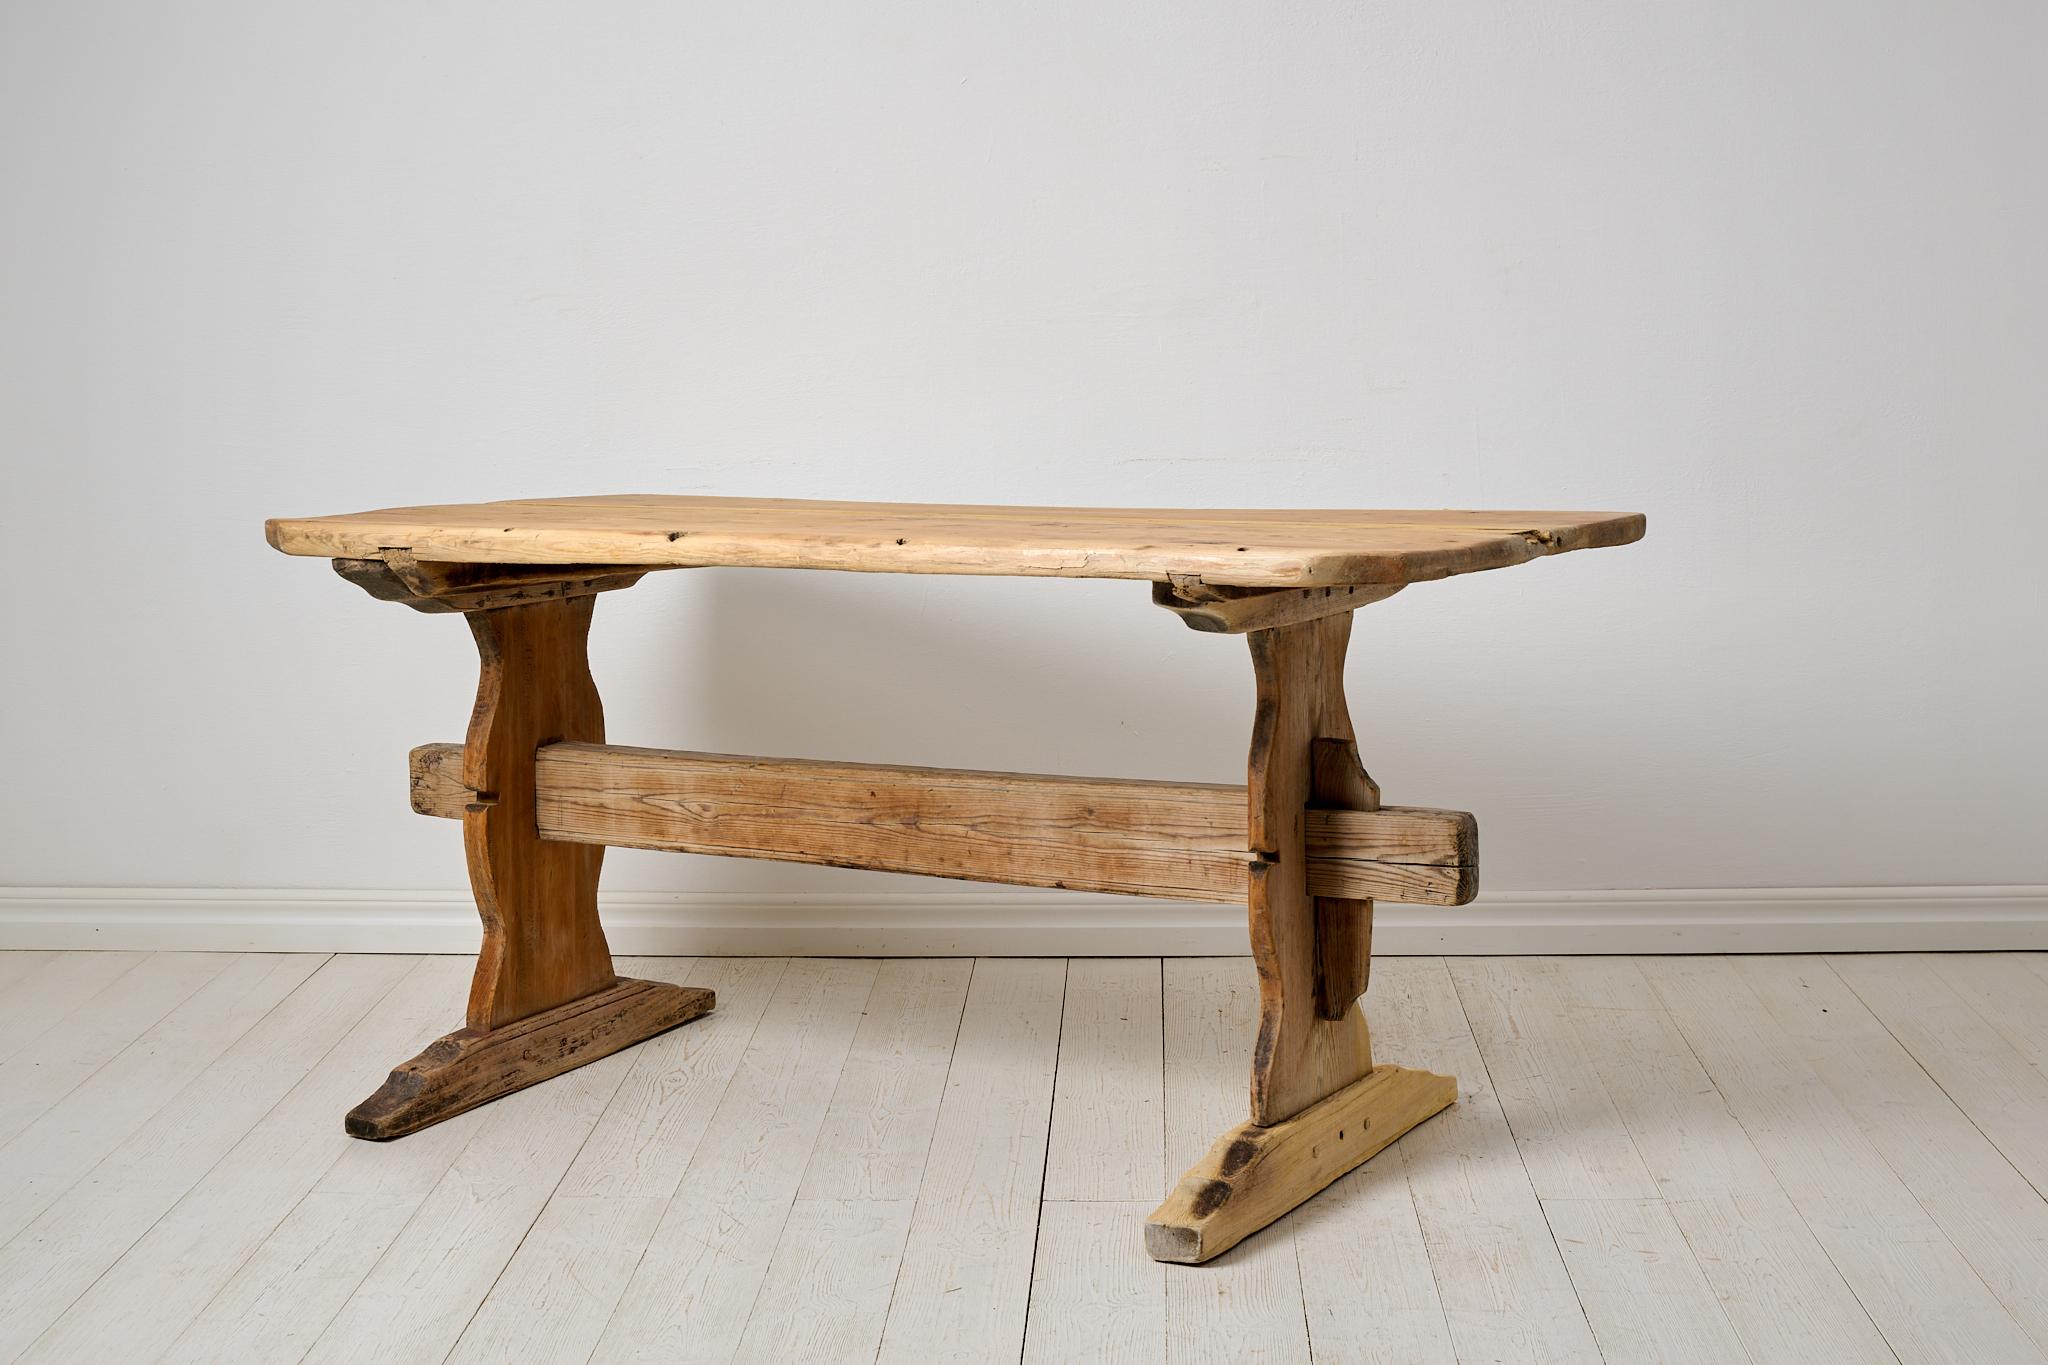 Folk-Art-Bocktisch, Ess- oder Arbeitstisch aus Nordschweden. Der Tisch ist eine echte Antiquität und ungewöhnlich robust und charmant gemacht. Die Tischplatte ist dick und schwer und besteht aus nur 2 großen Holzbrettern. Es wurde um die Mitte des